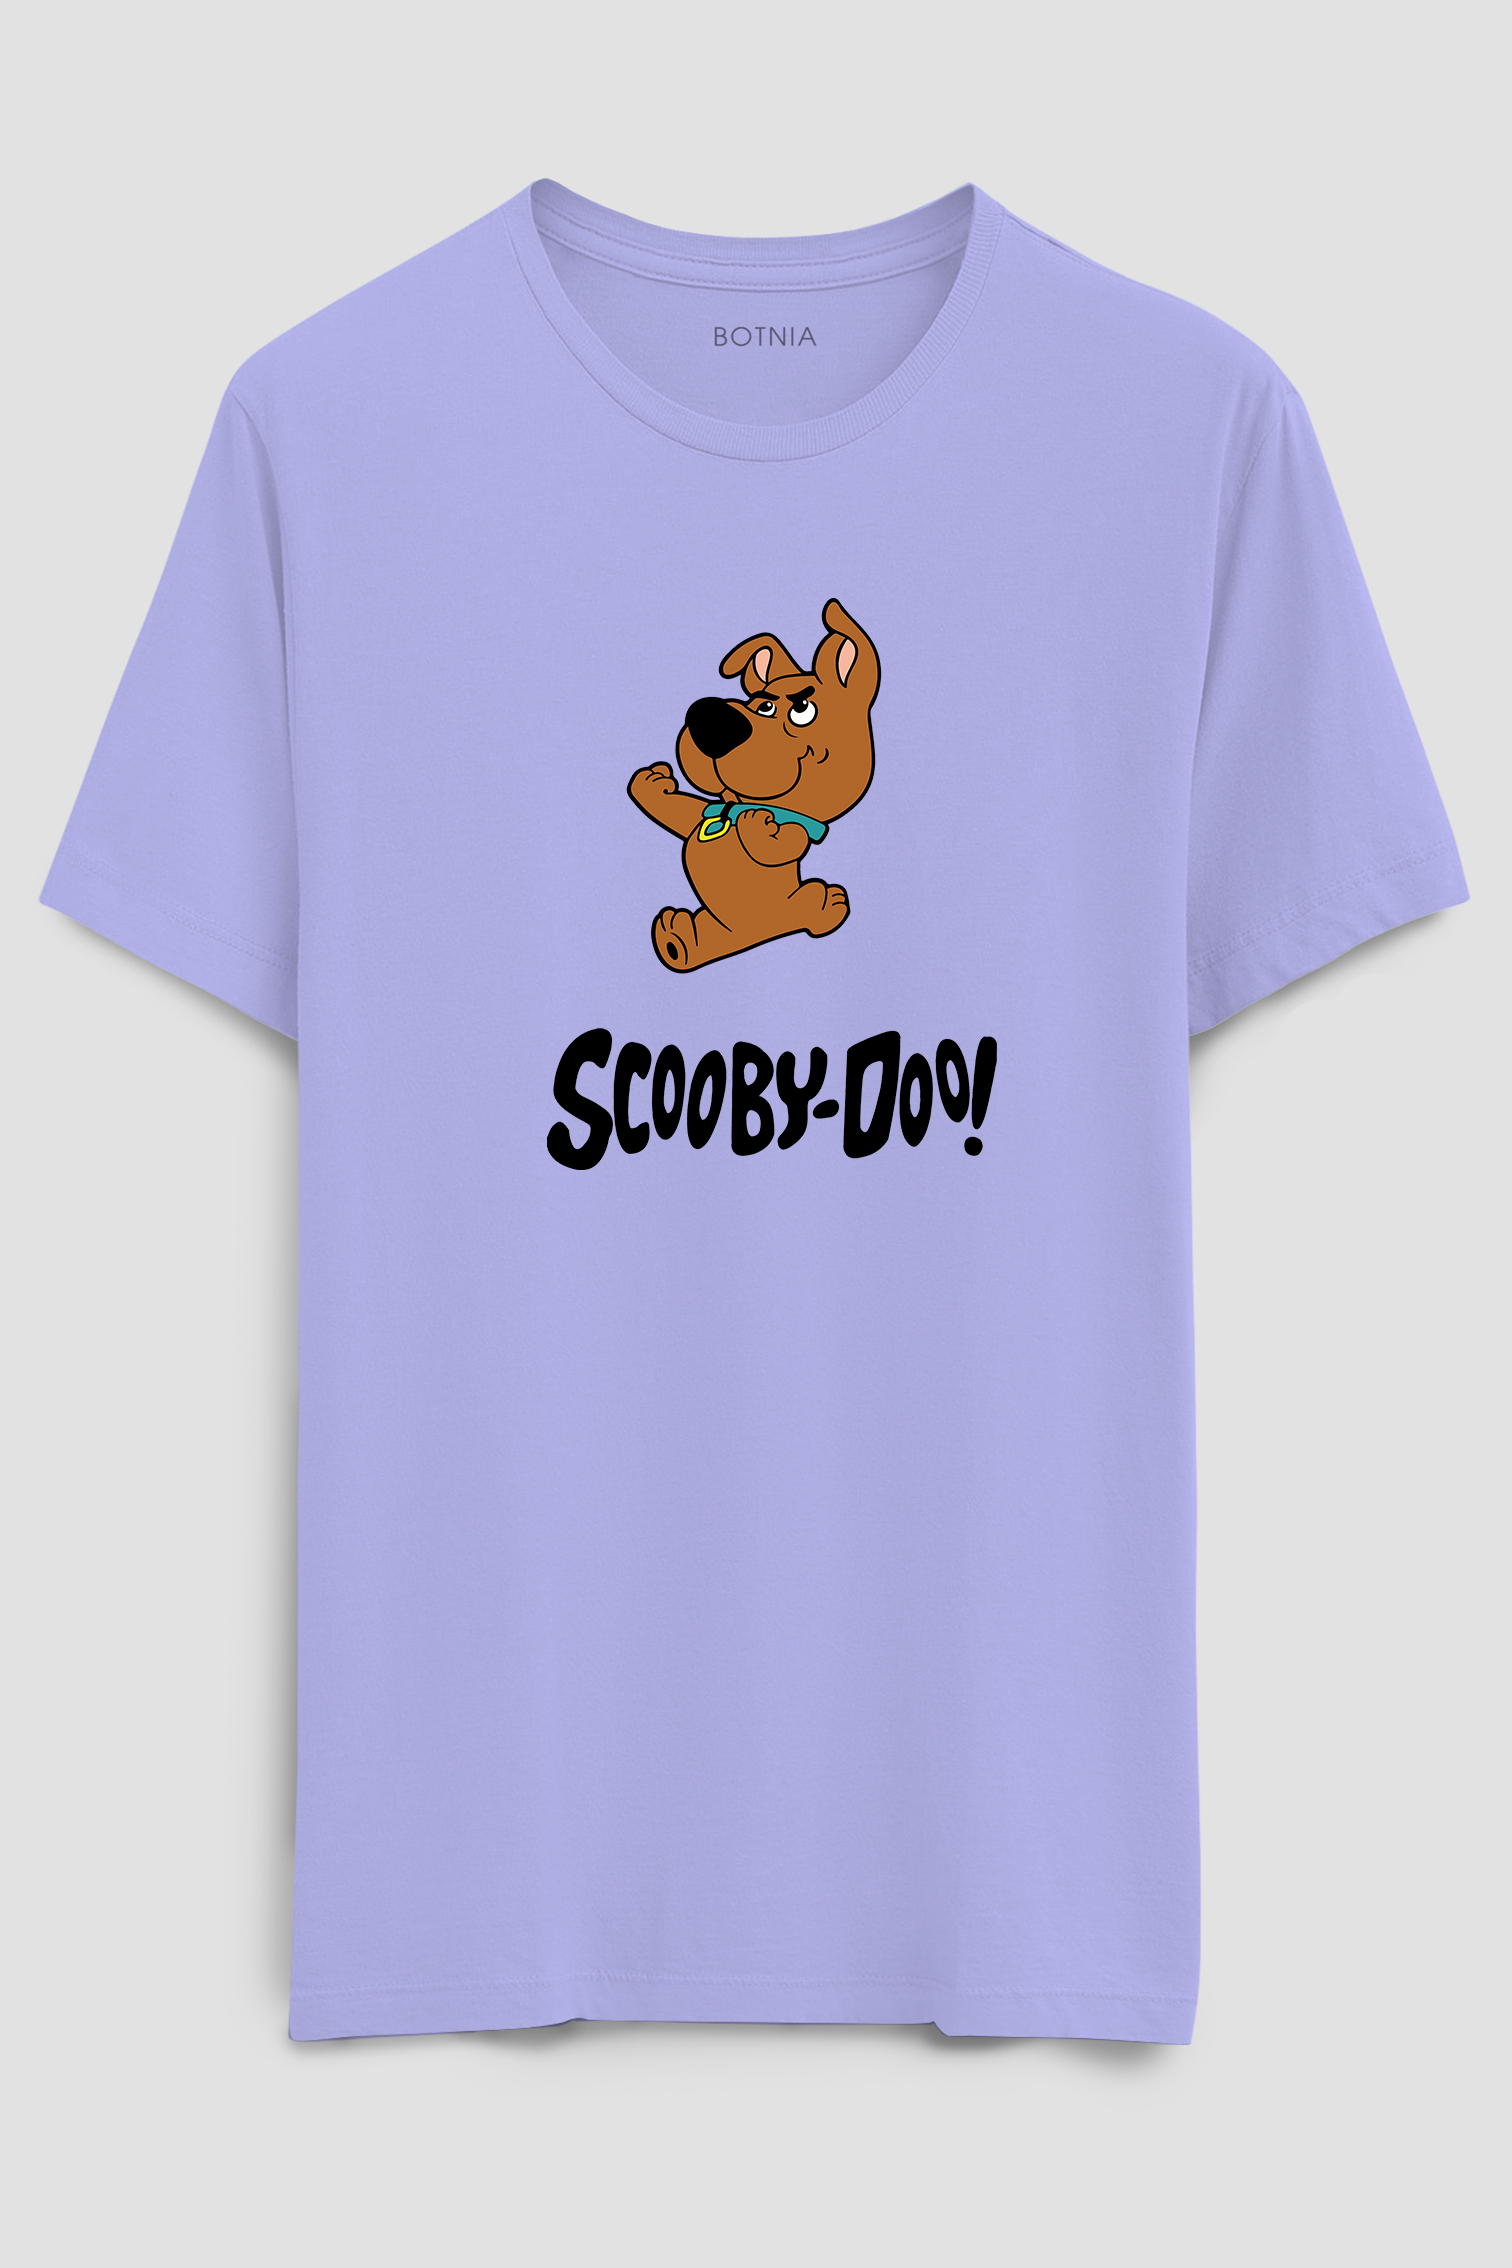 Scooby-Doo! Half sleeve t-shirt